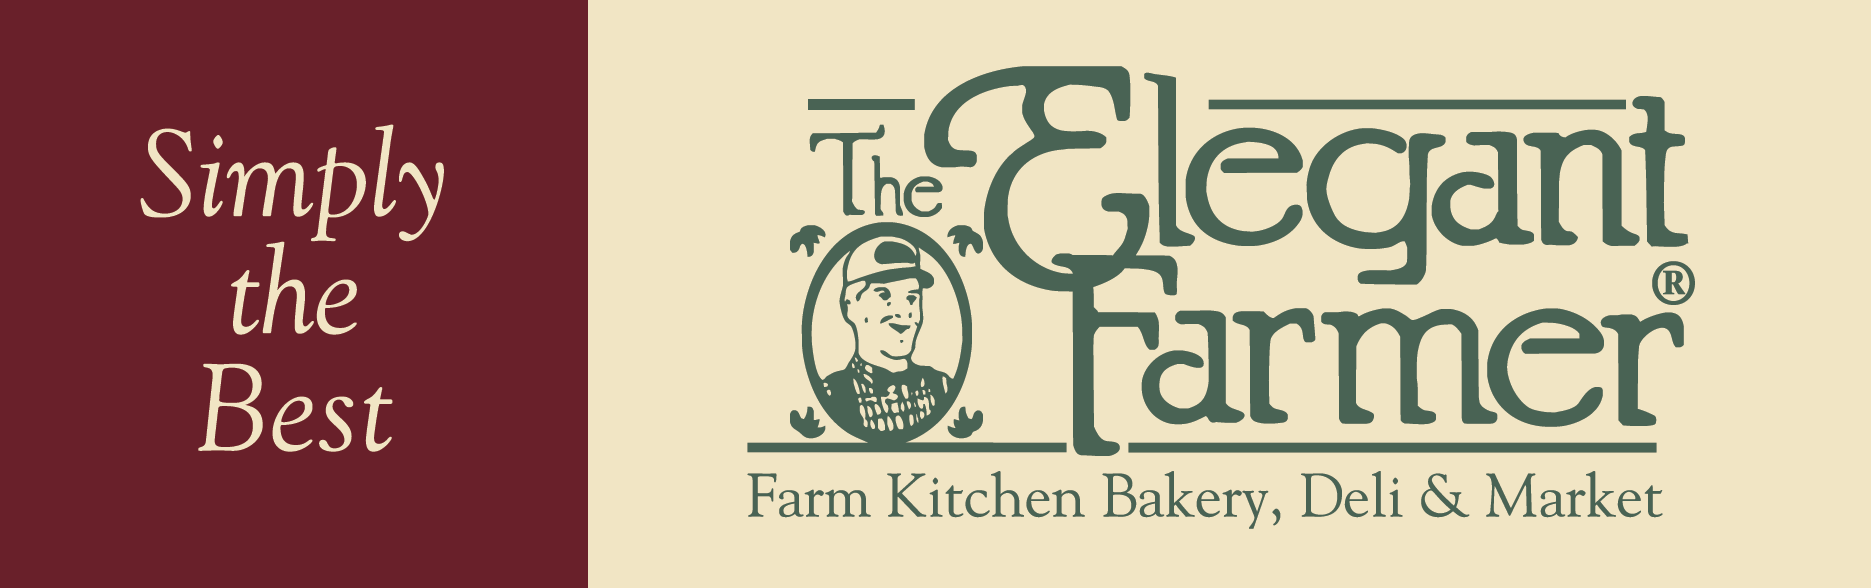 The Elegant Farmer logo